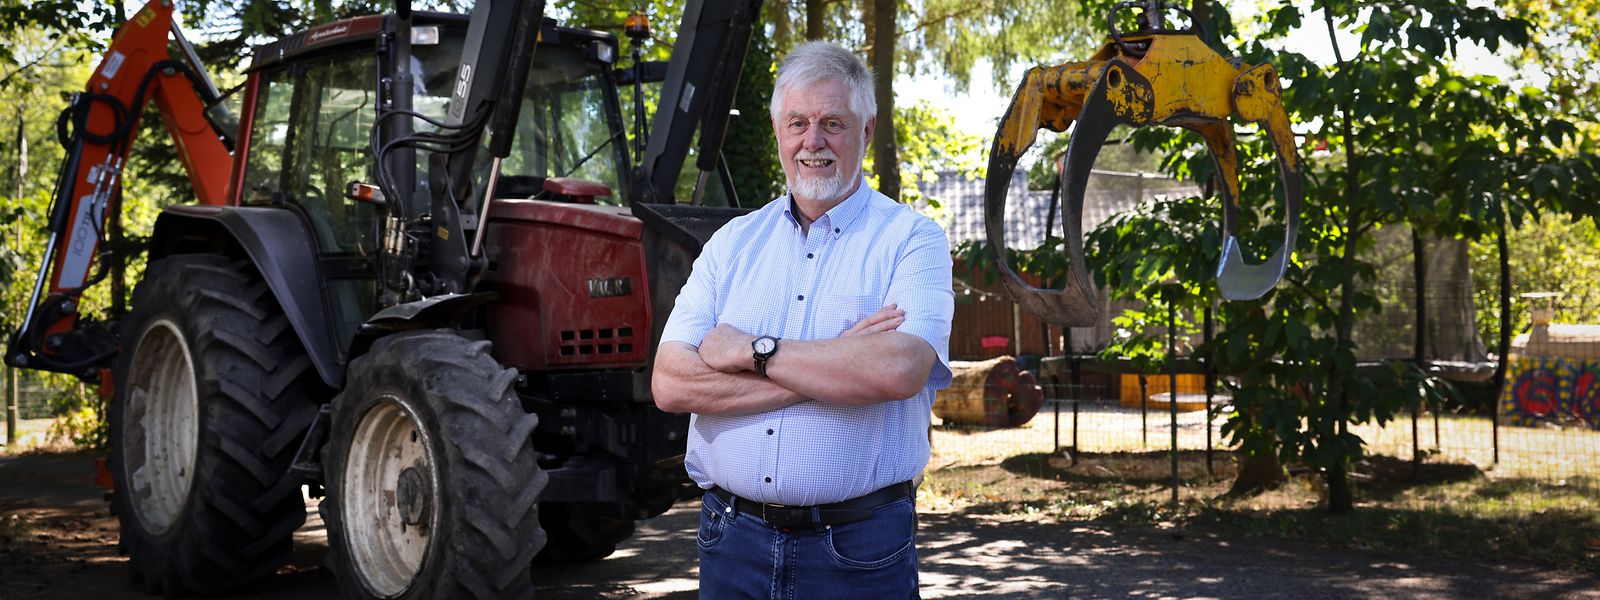 Nach seinem Rückzug aus der Politik wird man den künftigen Ex-Bürgermeister und Waldliebhaber Henri Wurth noch häufiger auf seinem Traktor sehen. 